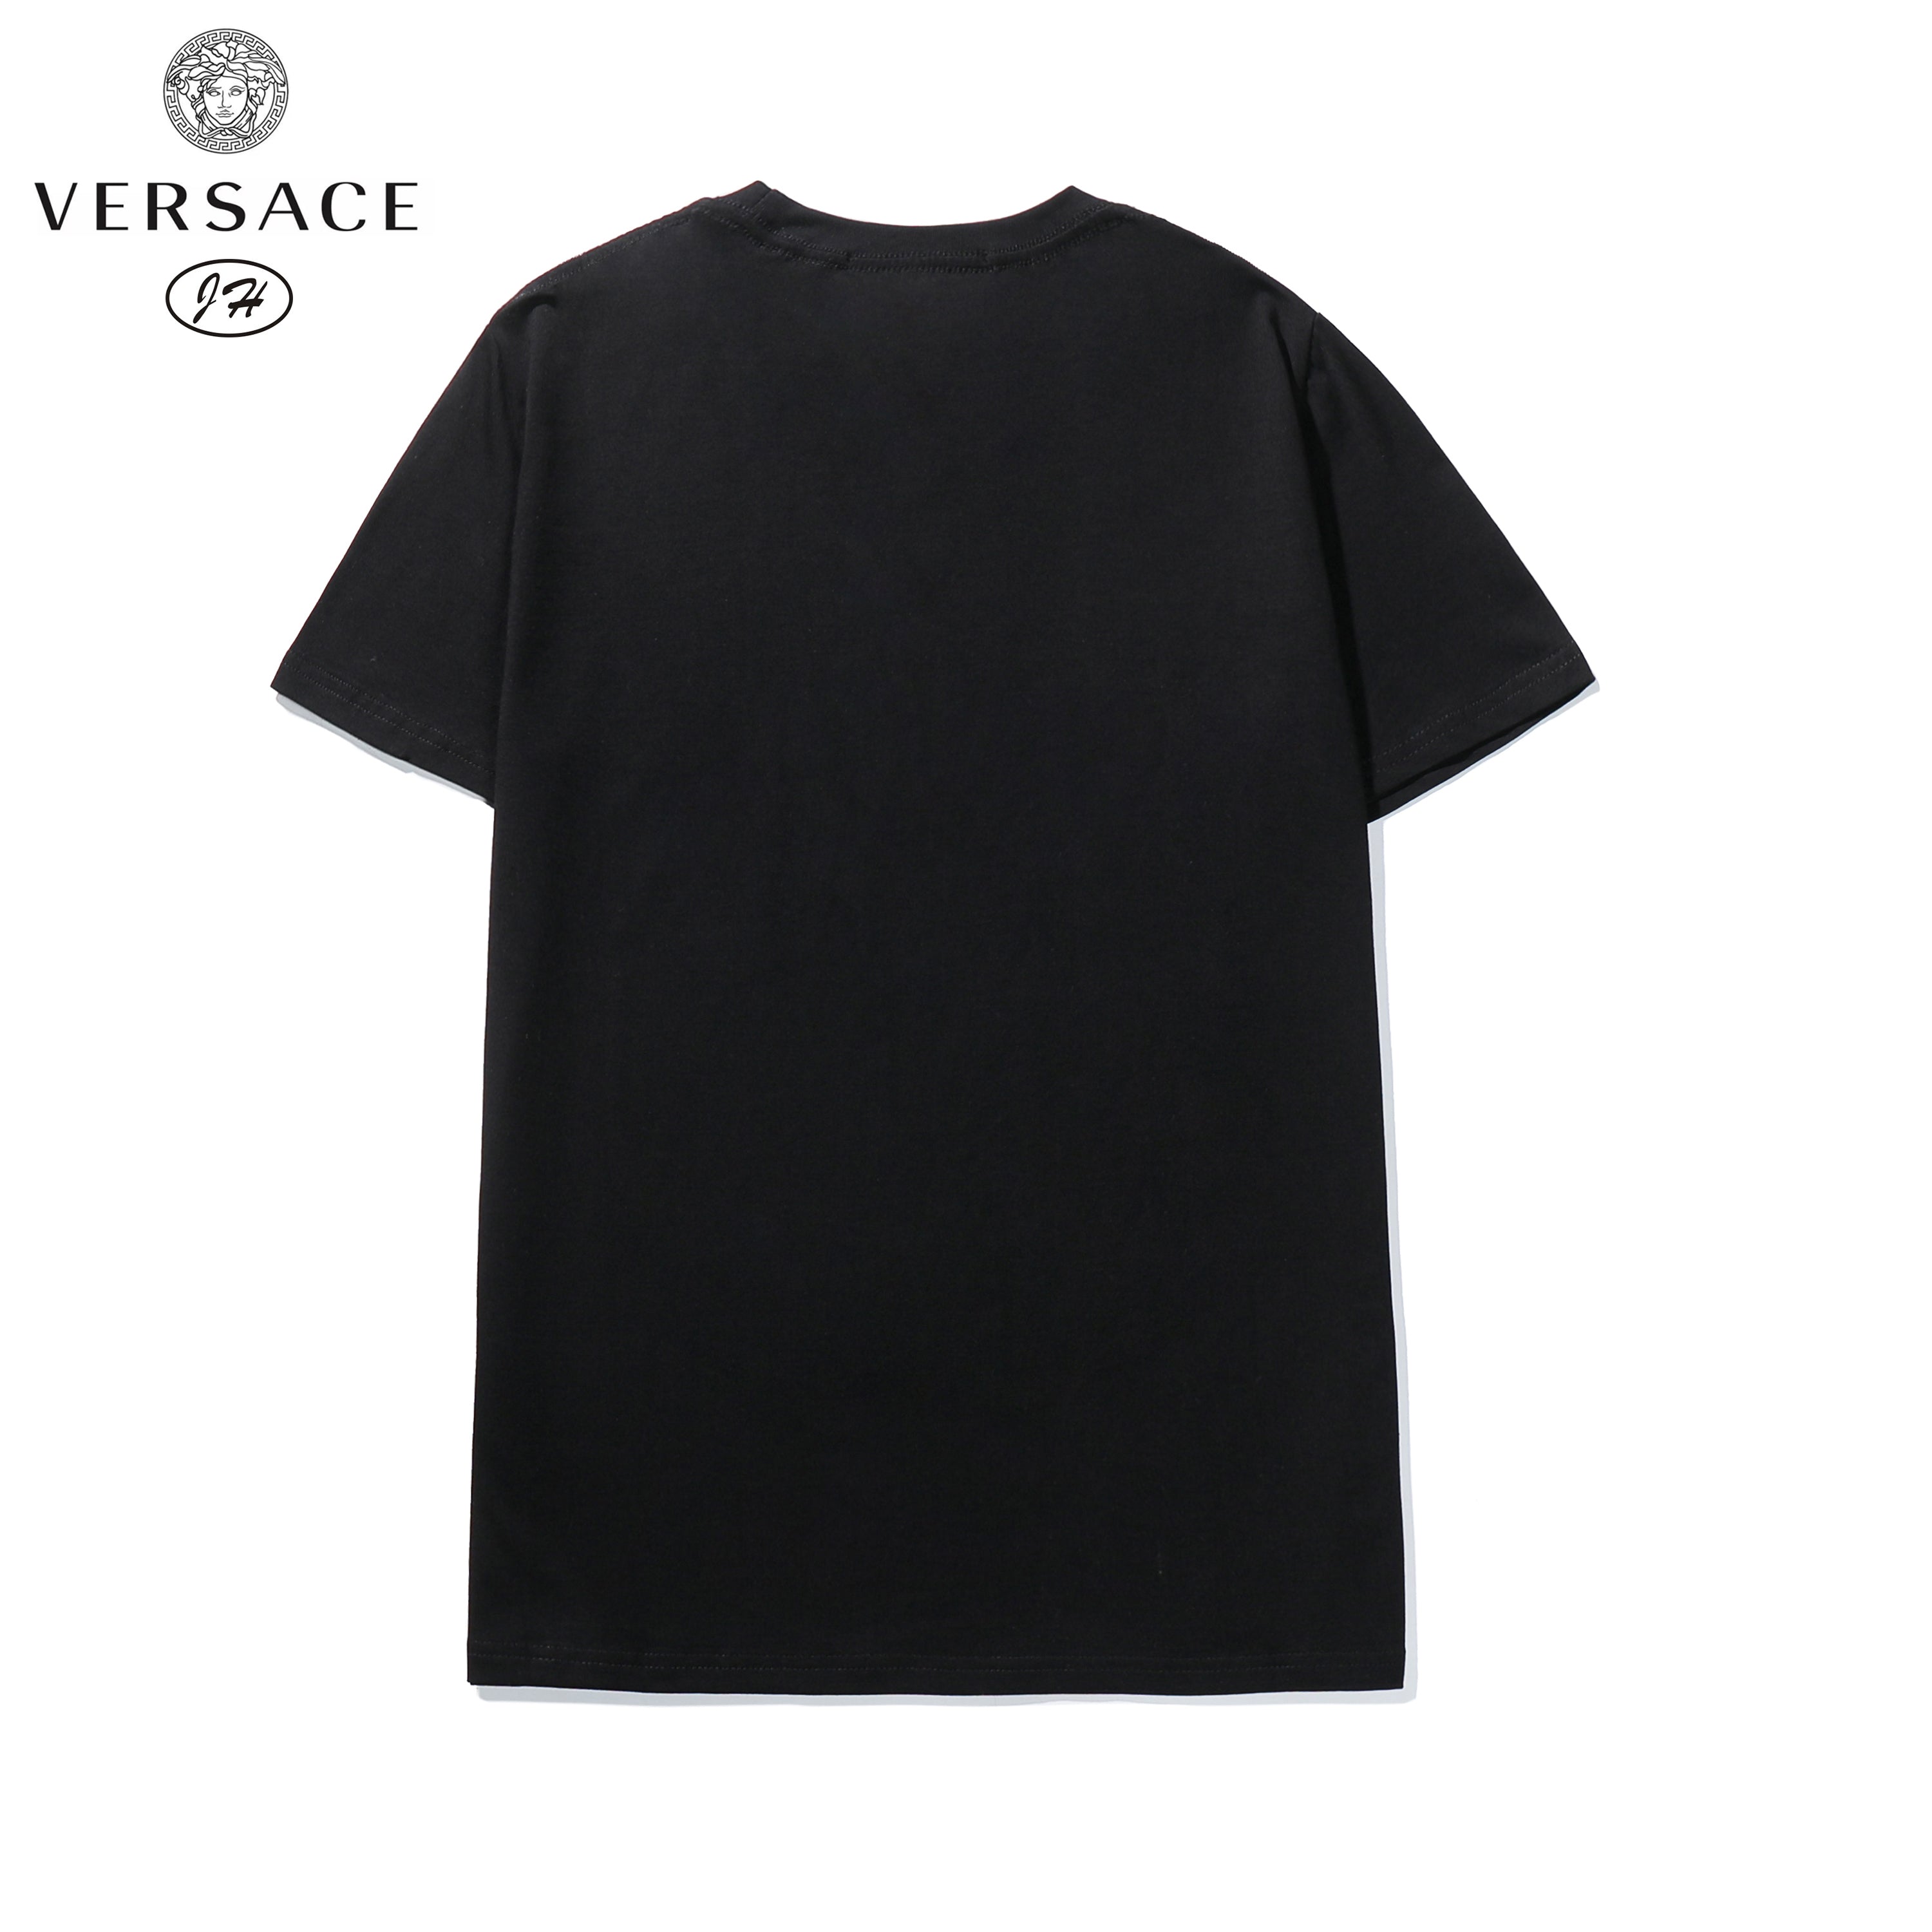 Versace Versace T-shirt